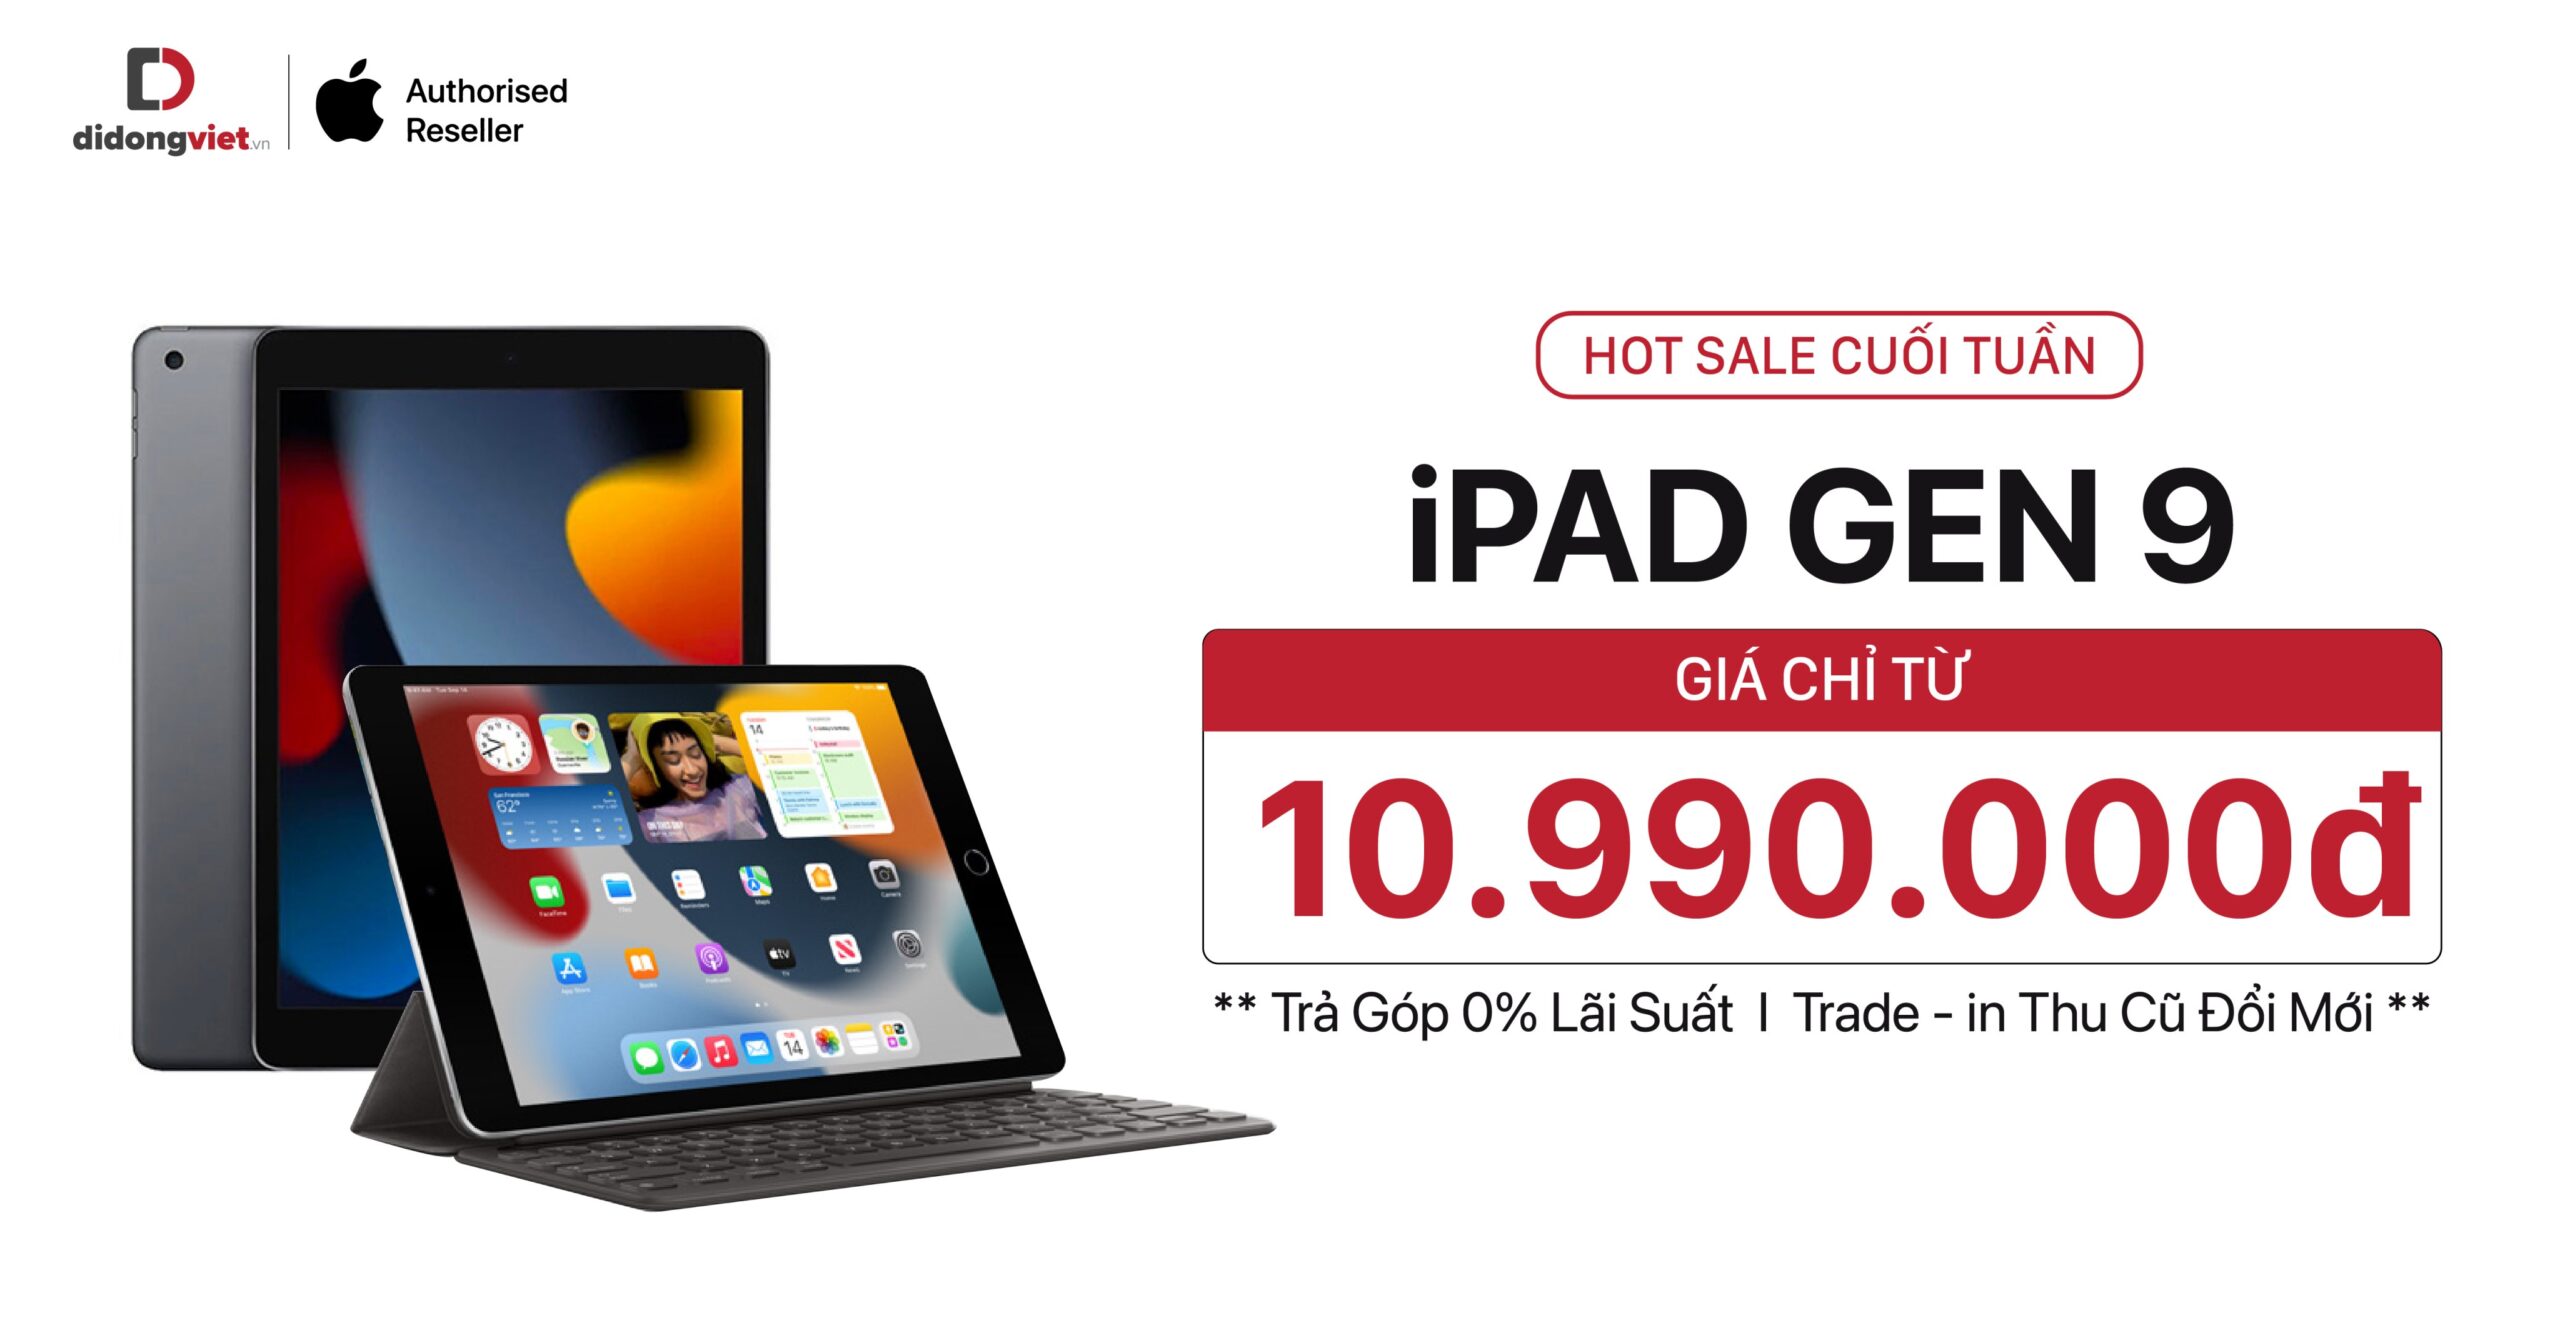 HOT SALE CUỐI TUẦN: iPad Gen 9 chỉ từ 10.990.000đ. Hỗ trợ trả góp 0%. Giao hàng chỉ trong 1H!!!